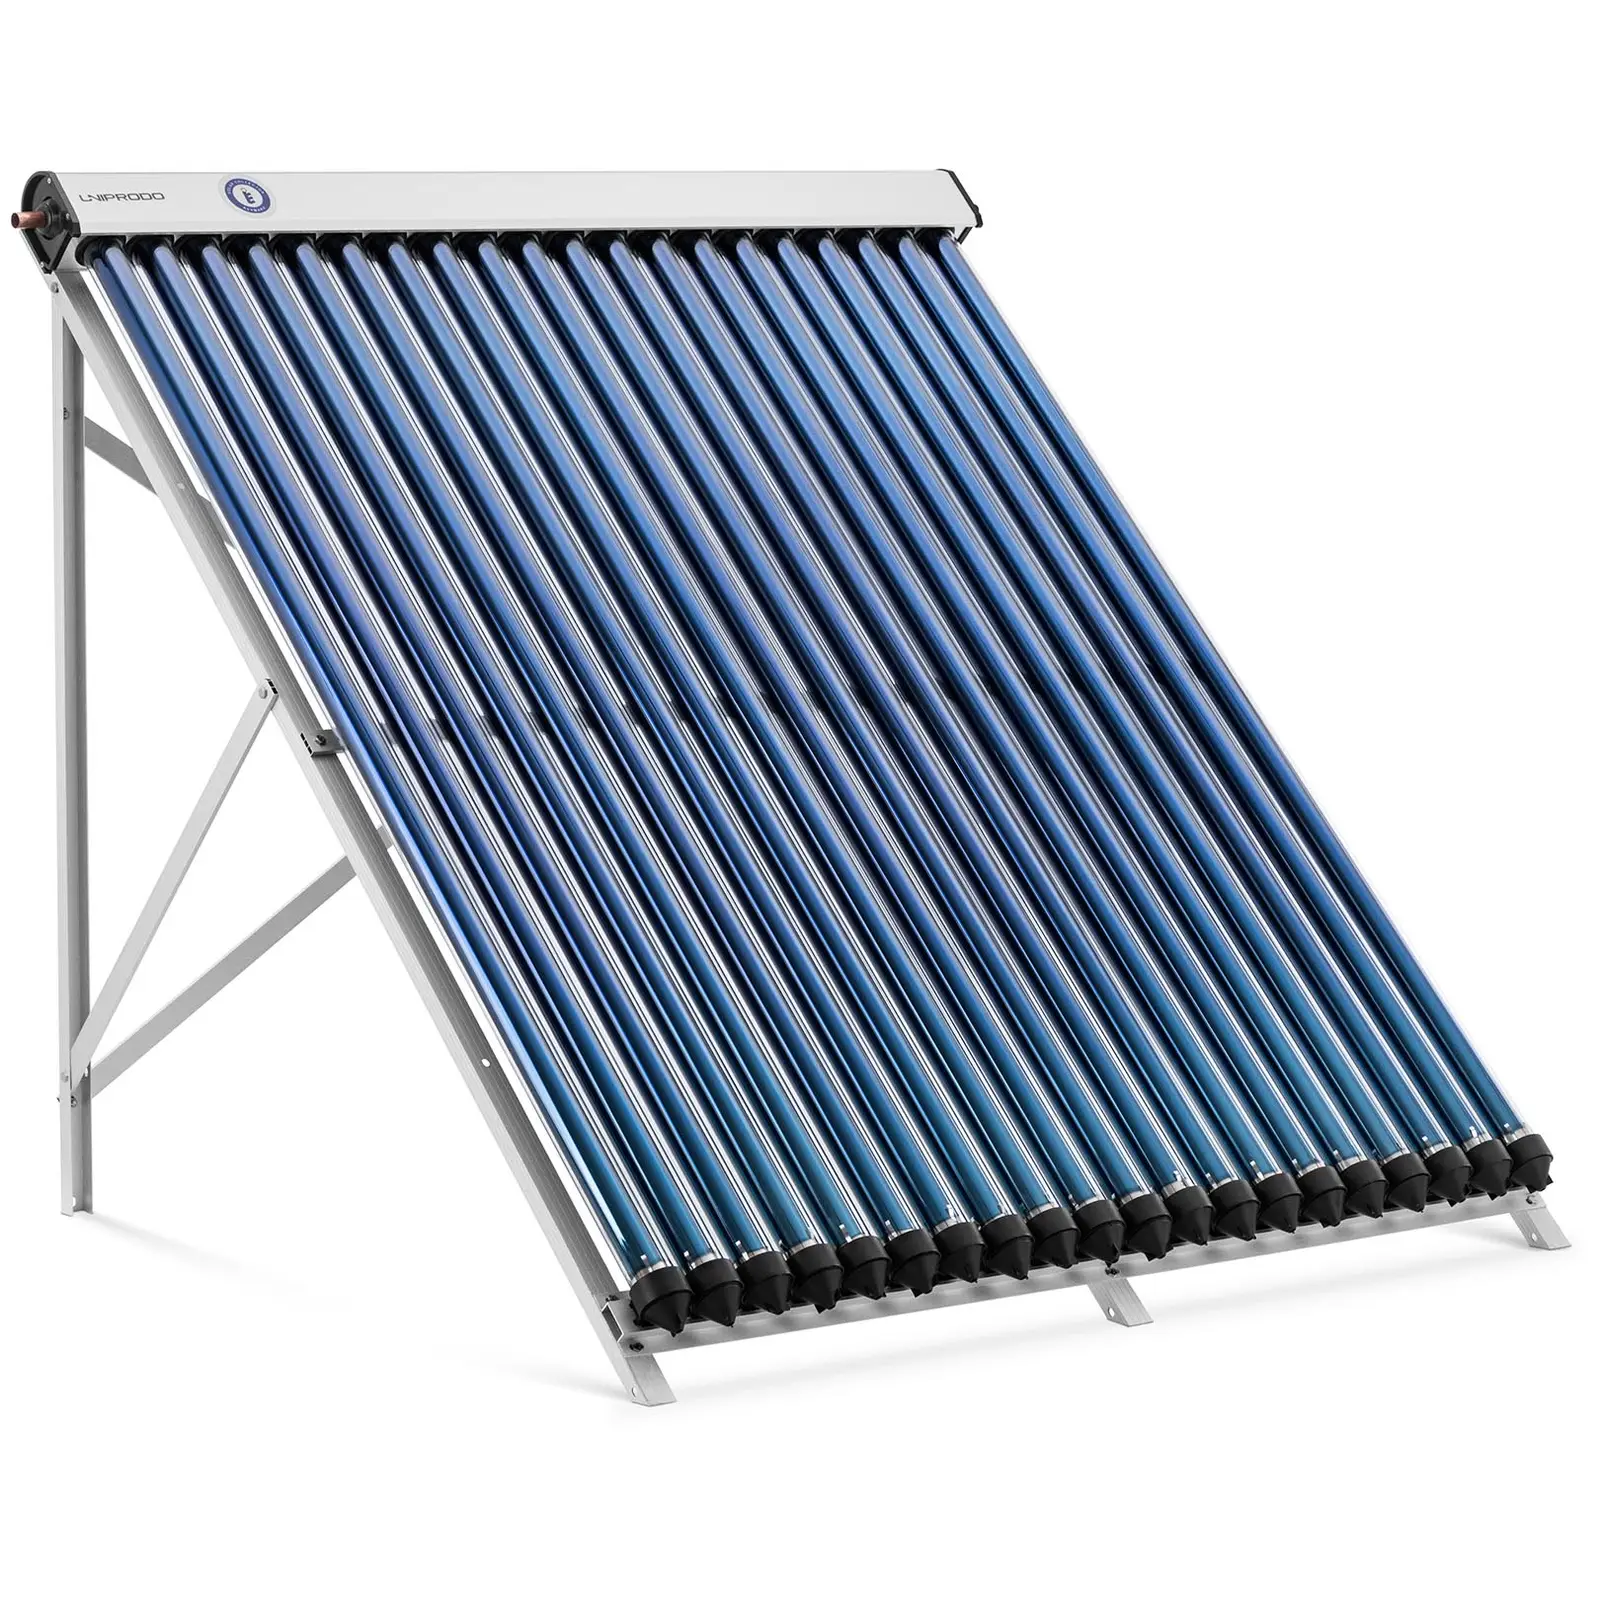 Vakuuminis vamzdinis saulės kolektoriu - saulės šiluminė energija - 20 vamzdžių - 160 - 200 l - 1,6 m² - -45 - 90 °C